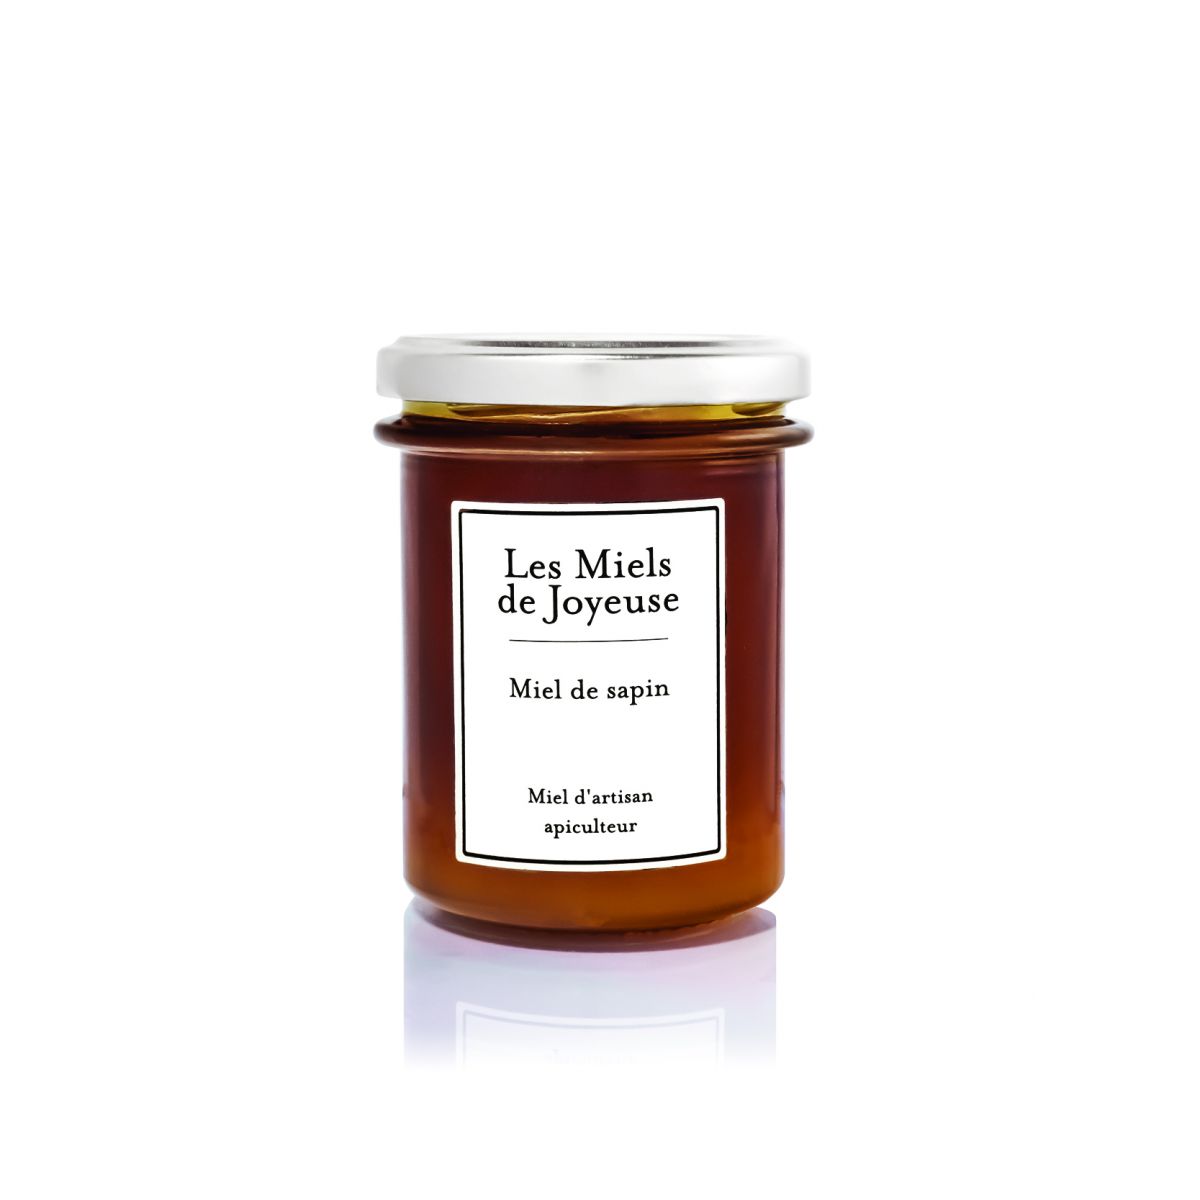 Miel de Sapin récolté par l'apiculteur en France